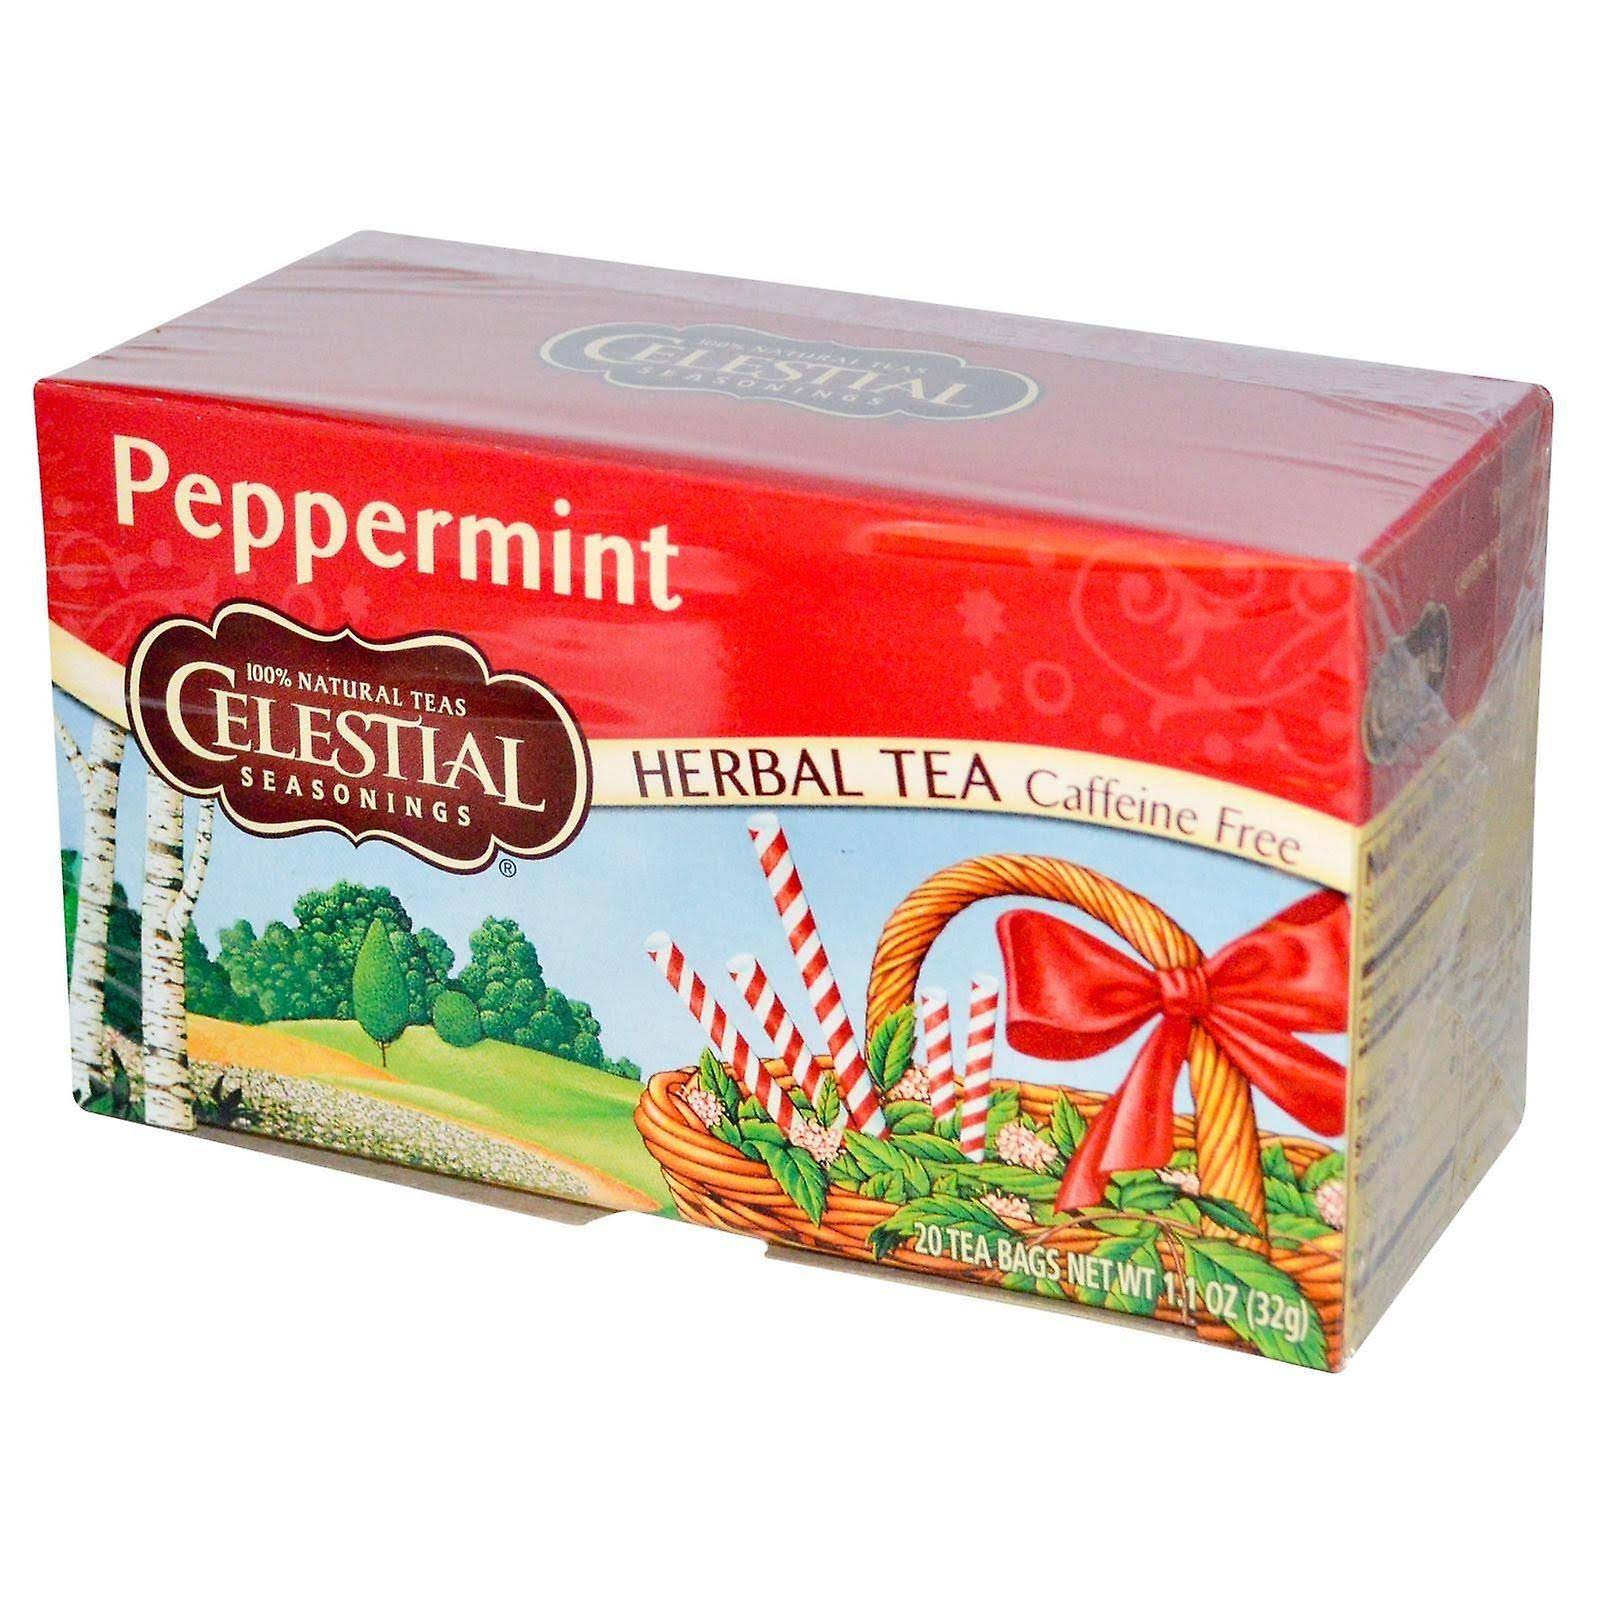 Celestial Seasonings Peppermint Herbal Tea - 1.1oz, x20